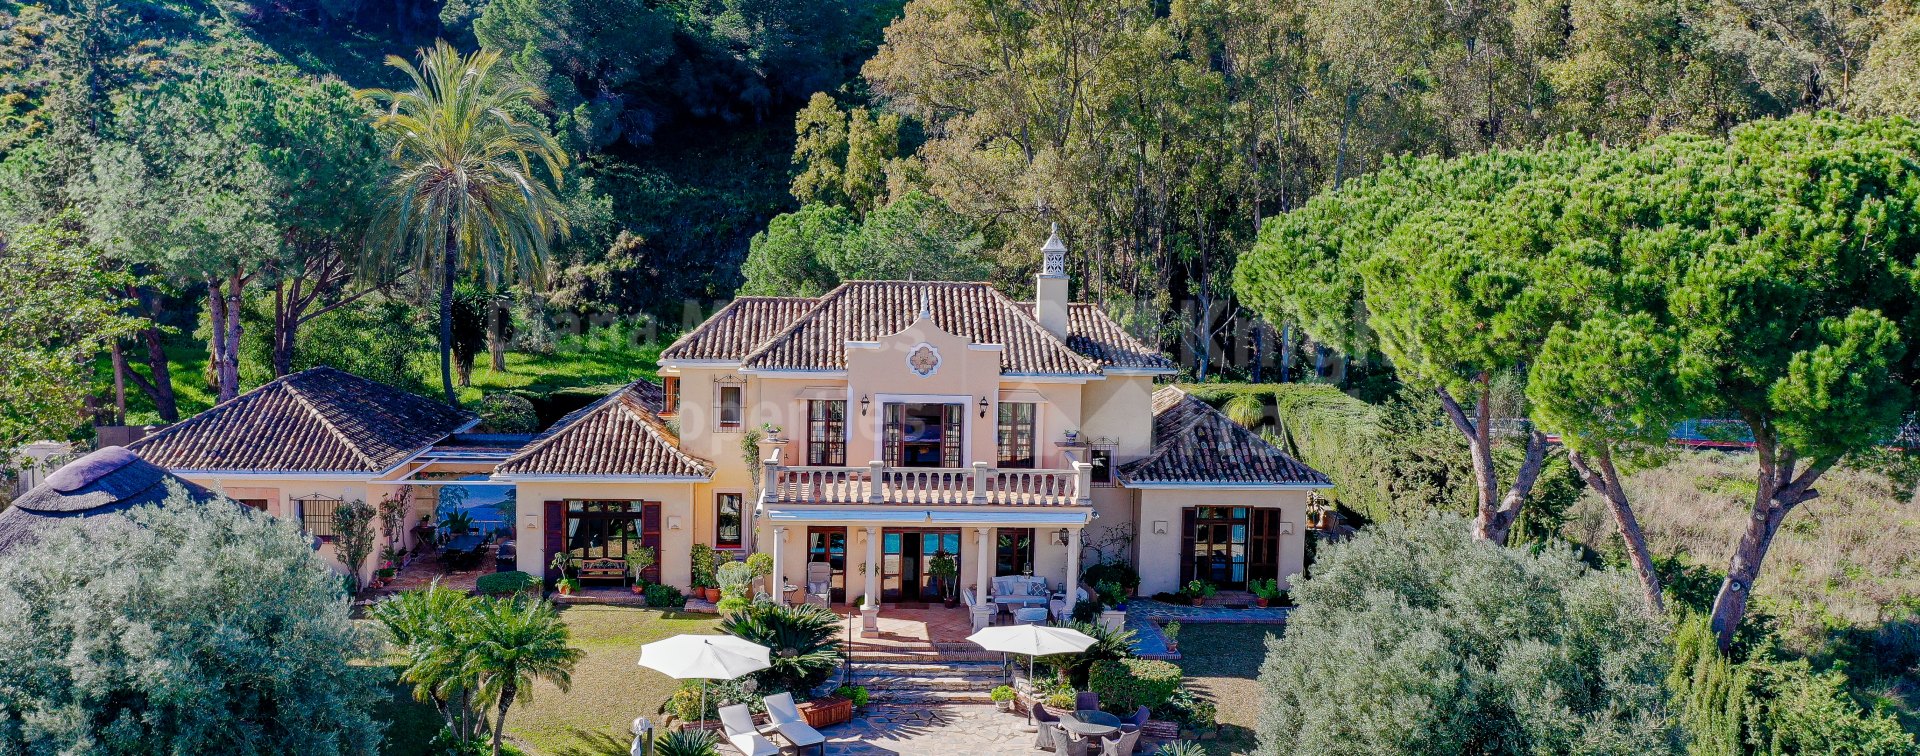 Las Brisas, Villa confortable et ensoleillée dans la vallée du golf